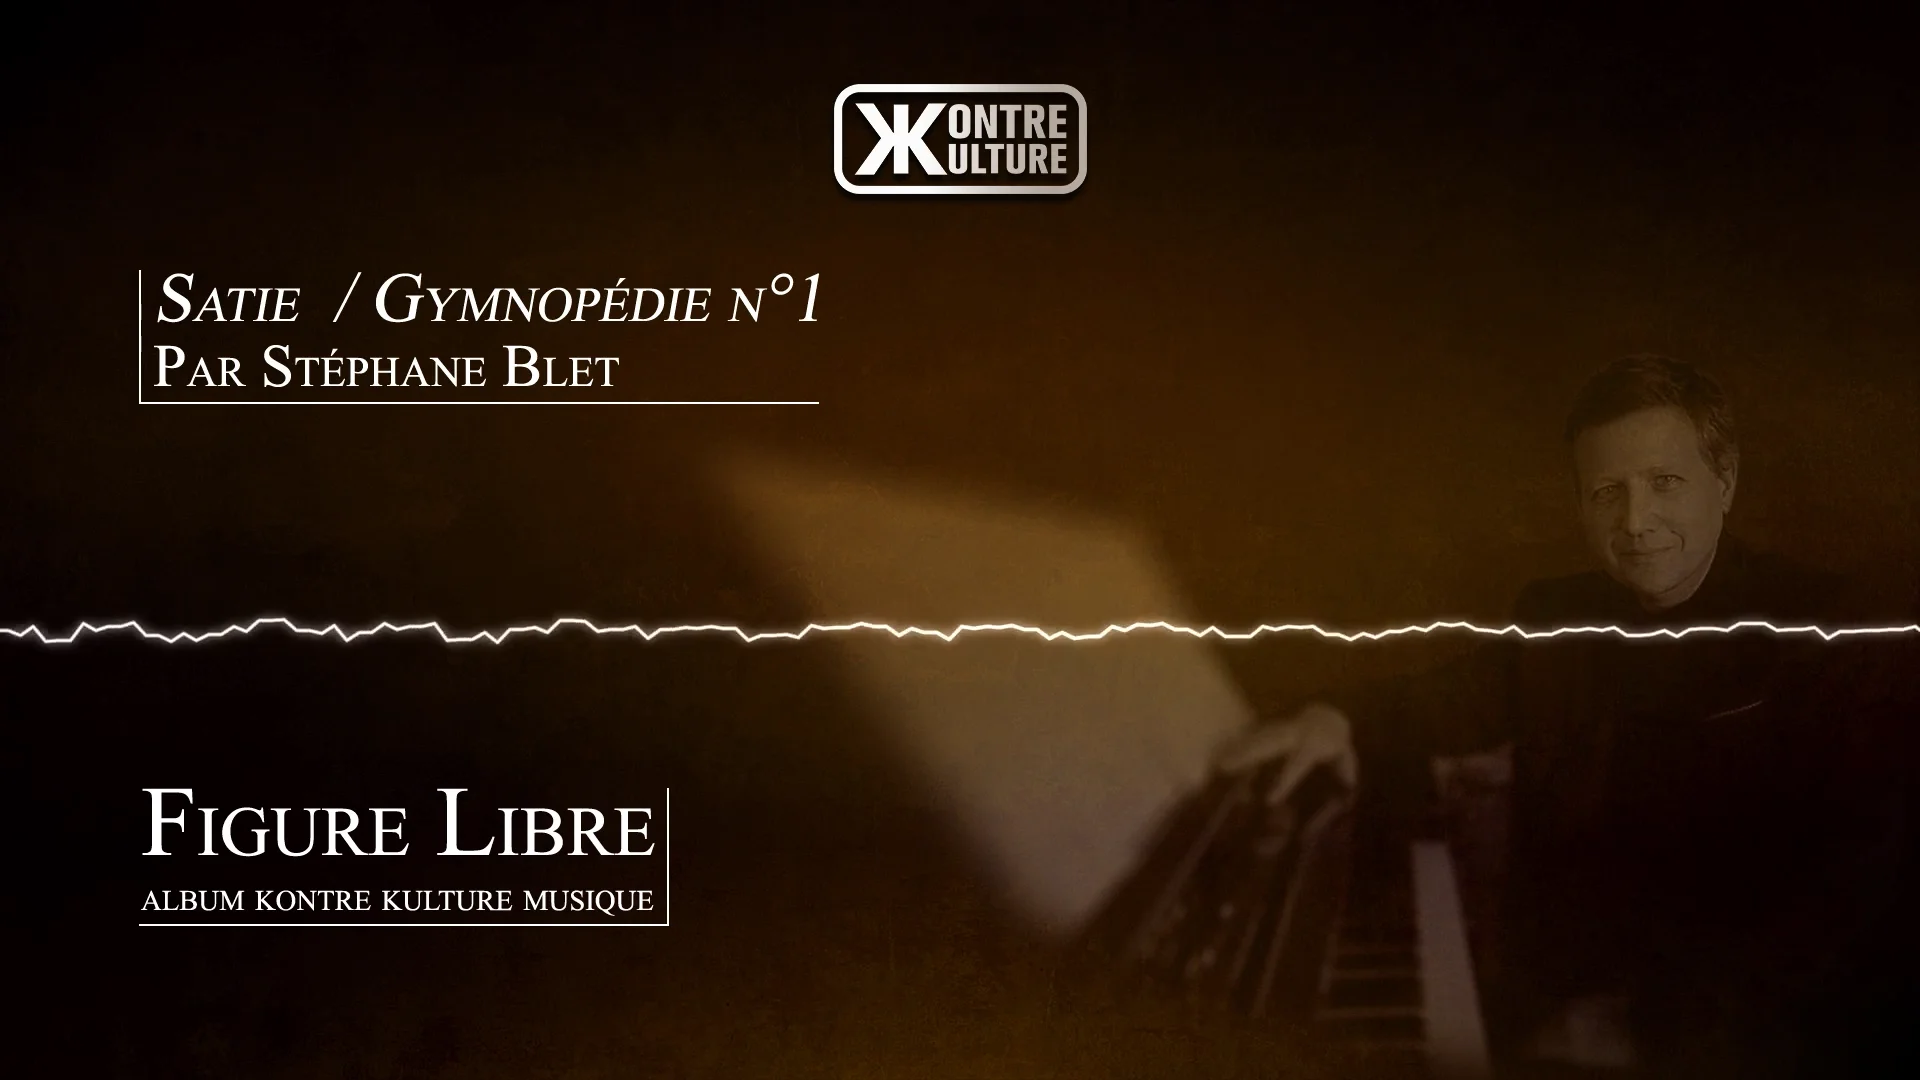 Kontre Kulture musique présente Gymnopédie n°1 de Satie par Stéphane Blet